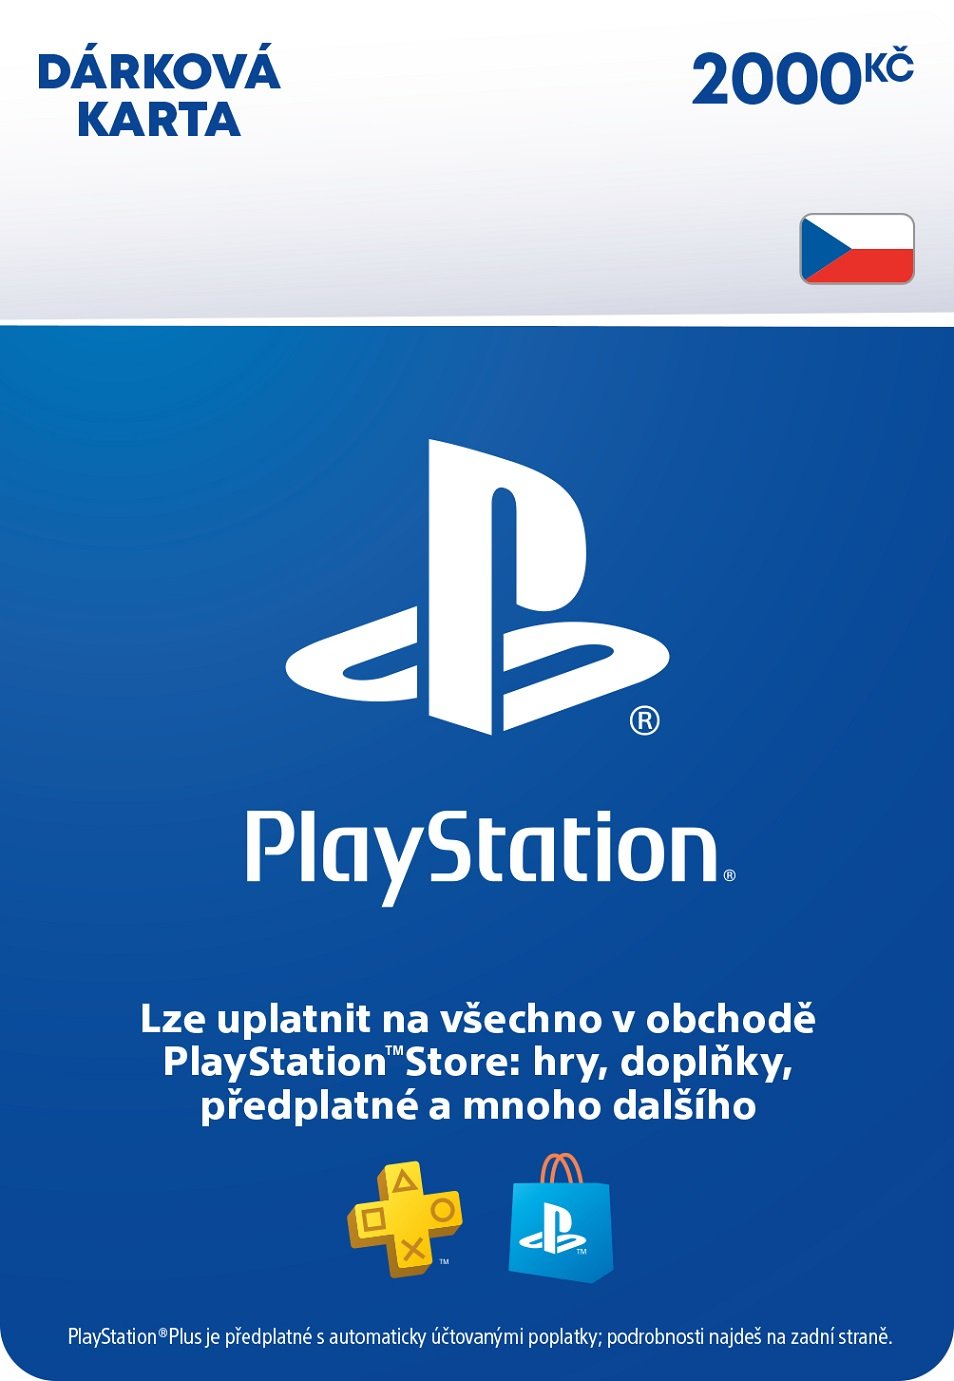 PlayStation Store – Dárková karta - 2000 Kč (PS DIGITAL) (DIGITAL)